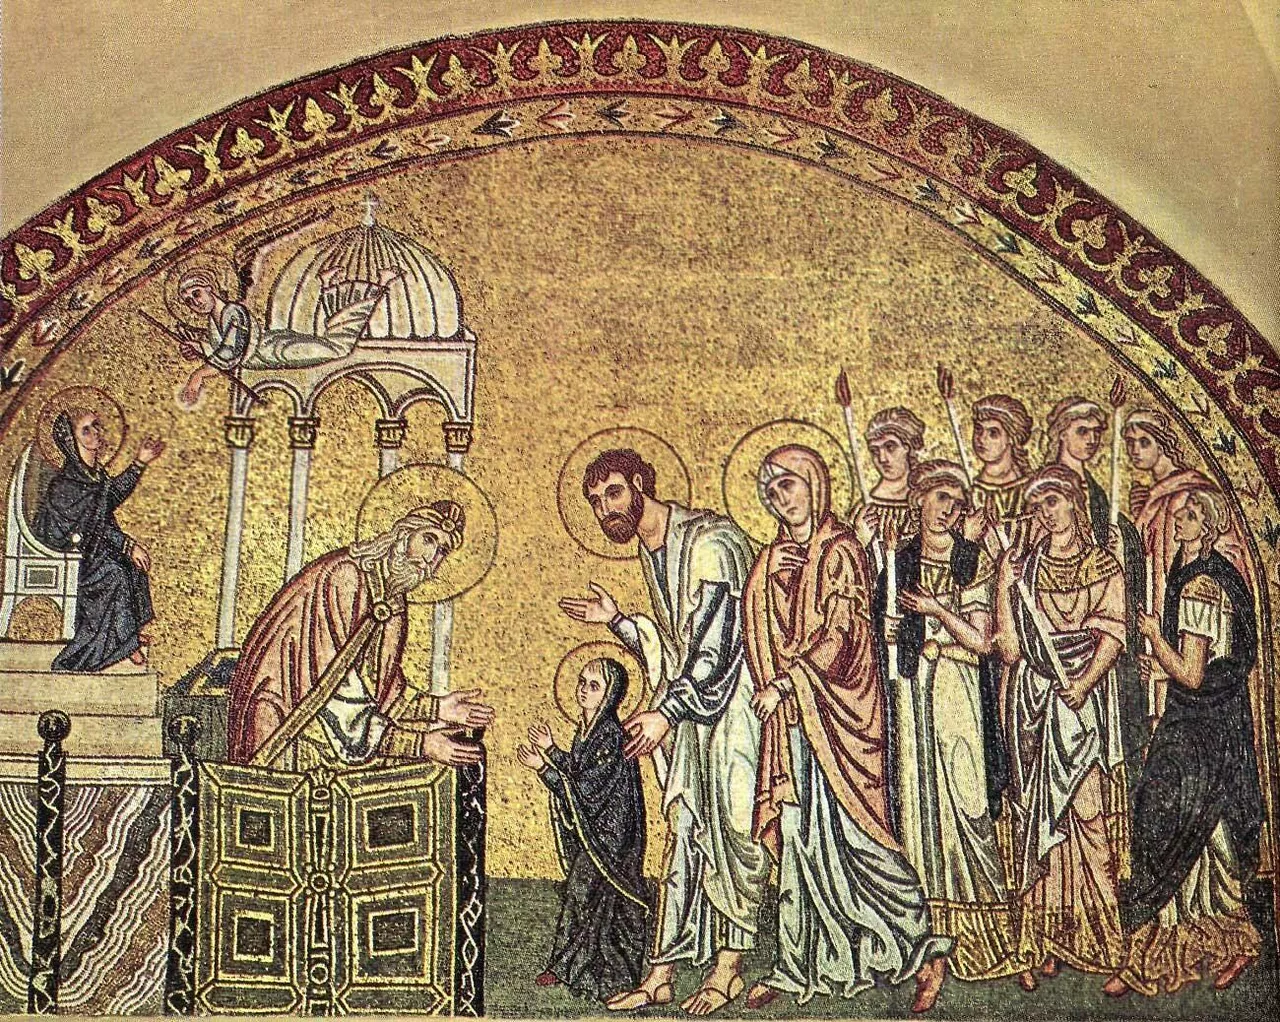 Мозаика «Введение во храм Богородицы» в церкви Успения близ Дафни, Греция, около 1100 г.